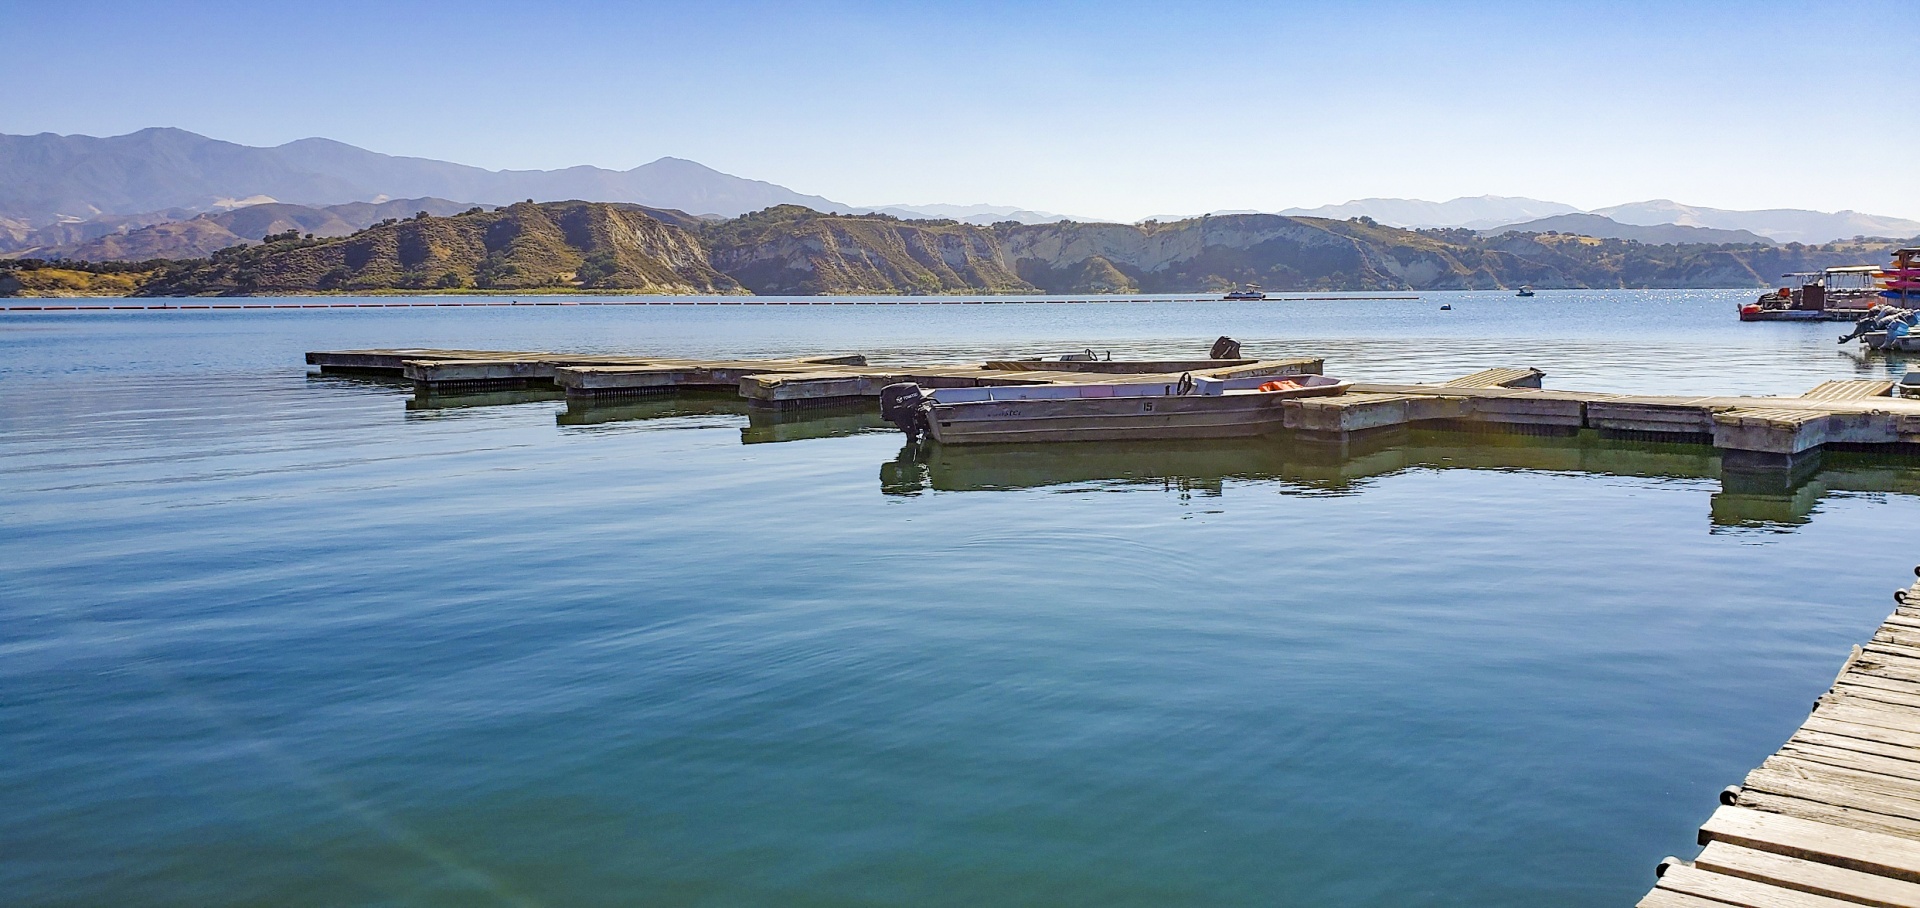 Boat Slips At Lake Cachuma